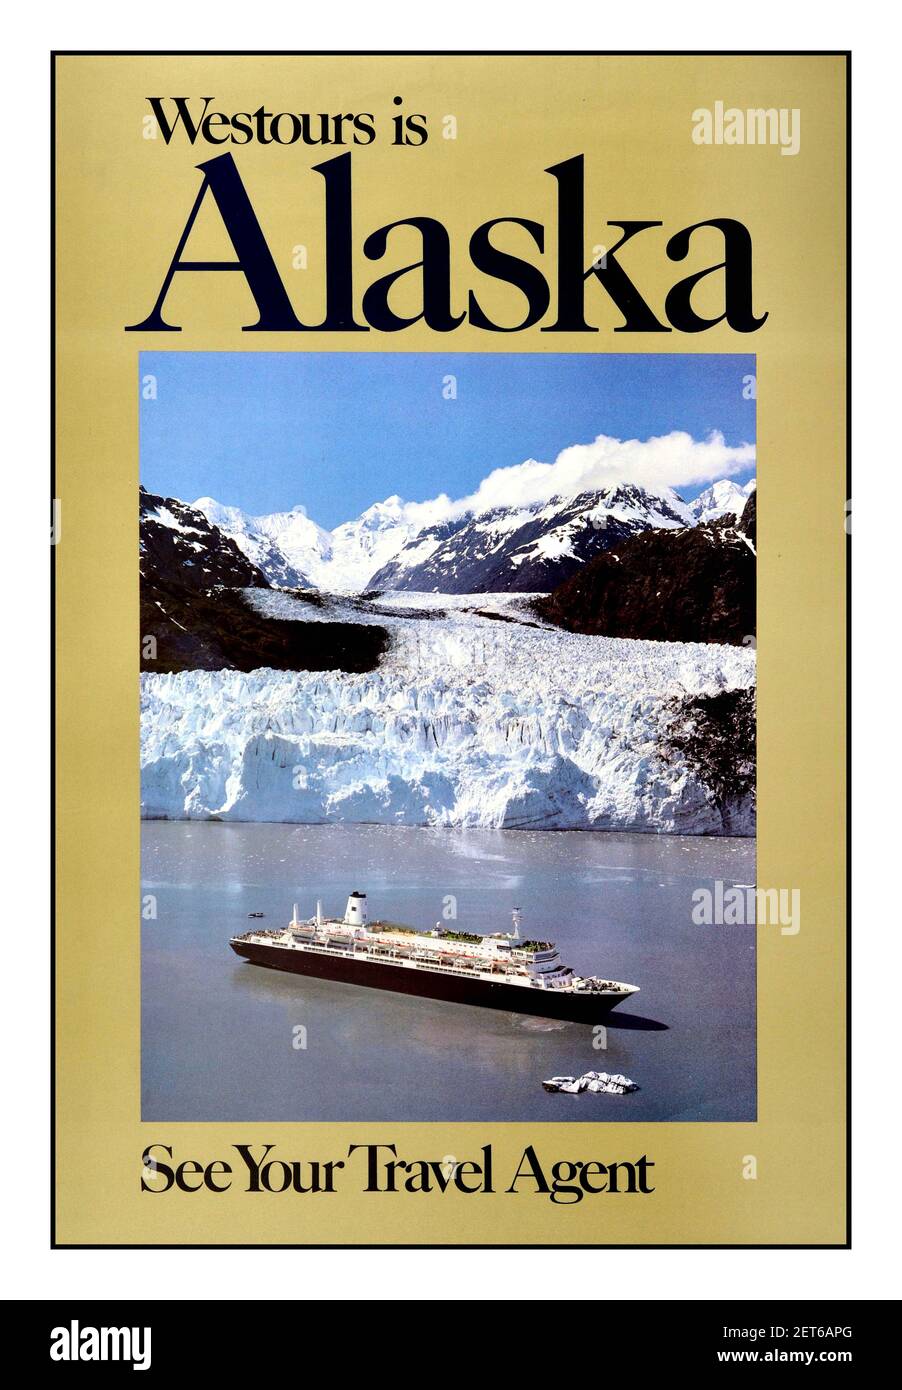 Alaska Cruise Reise Poster 'Westours is Alaska - See your Travel Agent' - Kreuzfahrtschiff, das an einem herrlichen Gletscher-Eisberg mit einer Bergkette und blauem Himmel in der Ferne vorbeisegelt. USA, 1970s Stockfoto